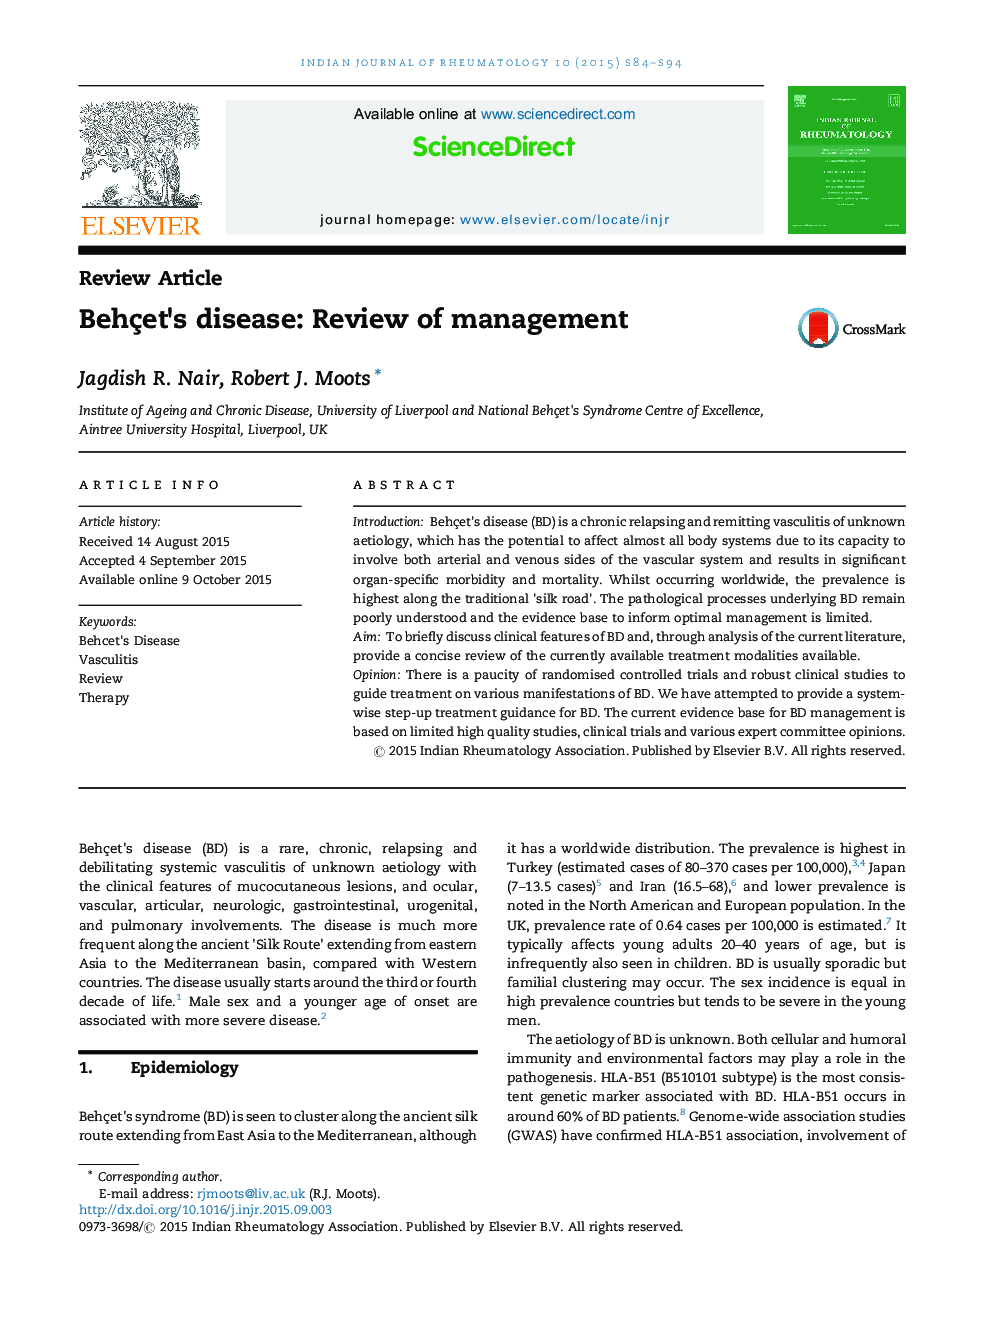 Behçet's disease: Review of management